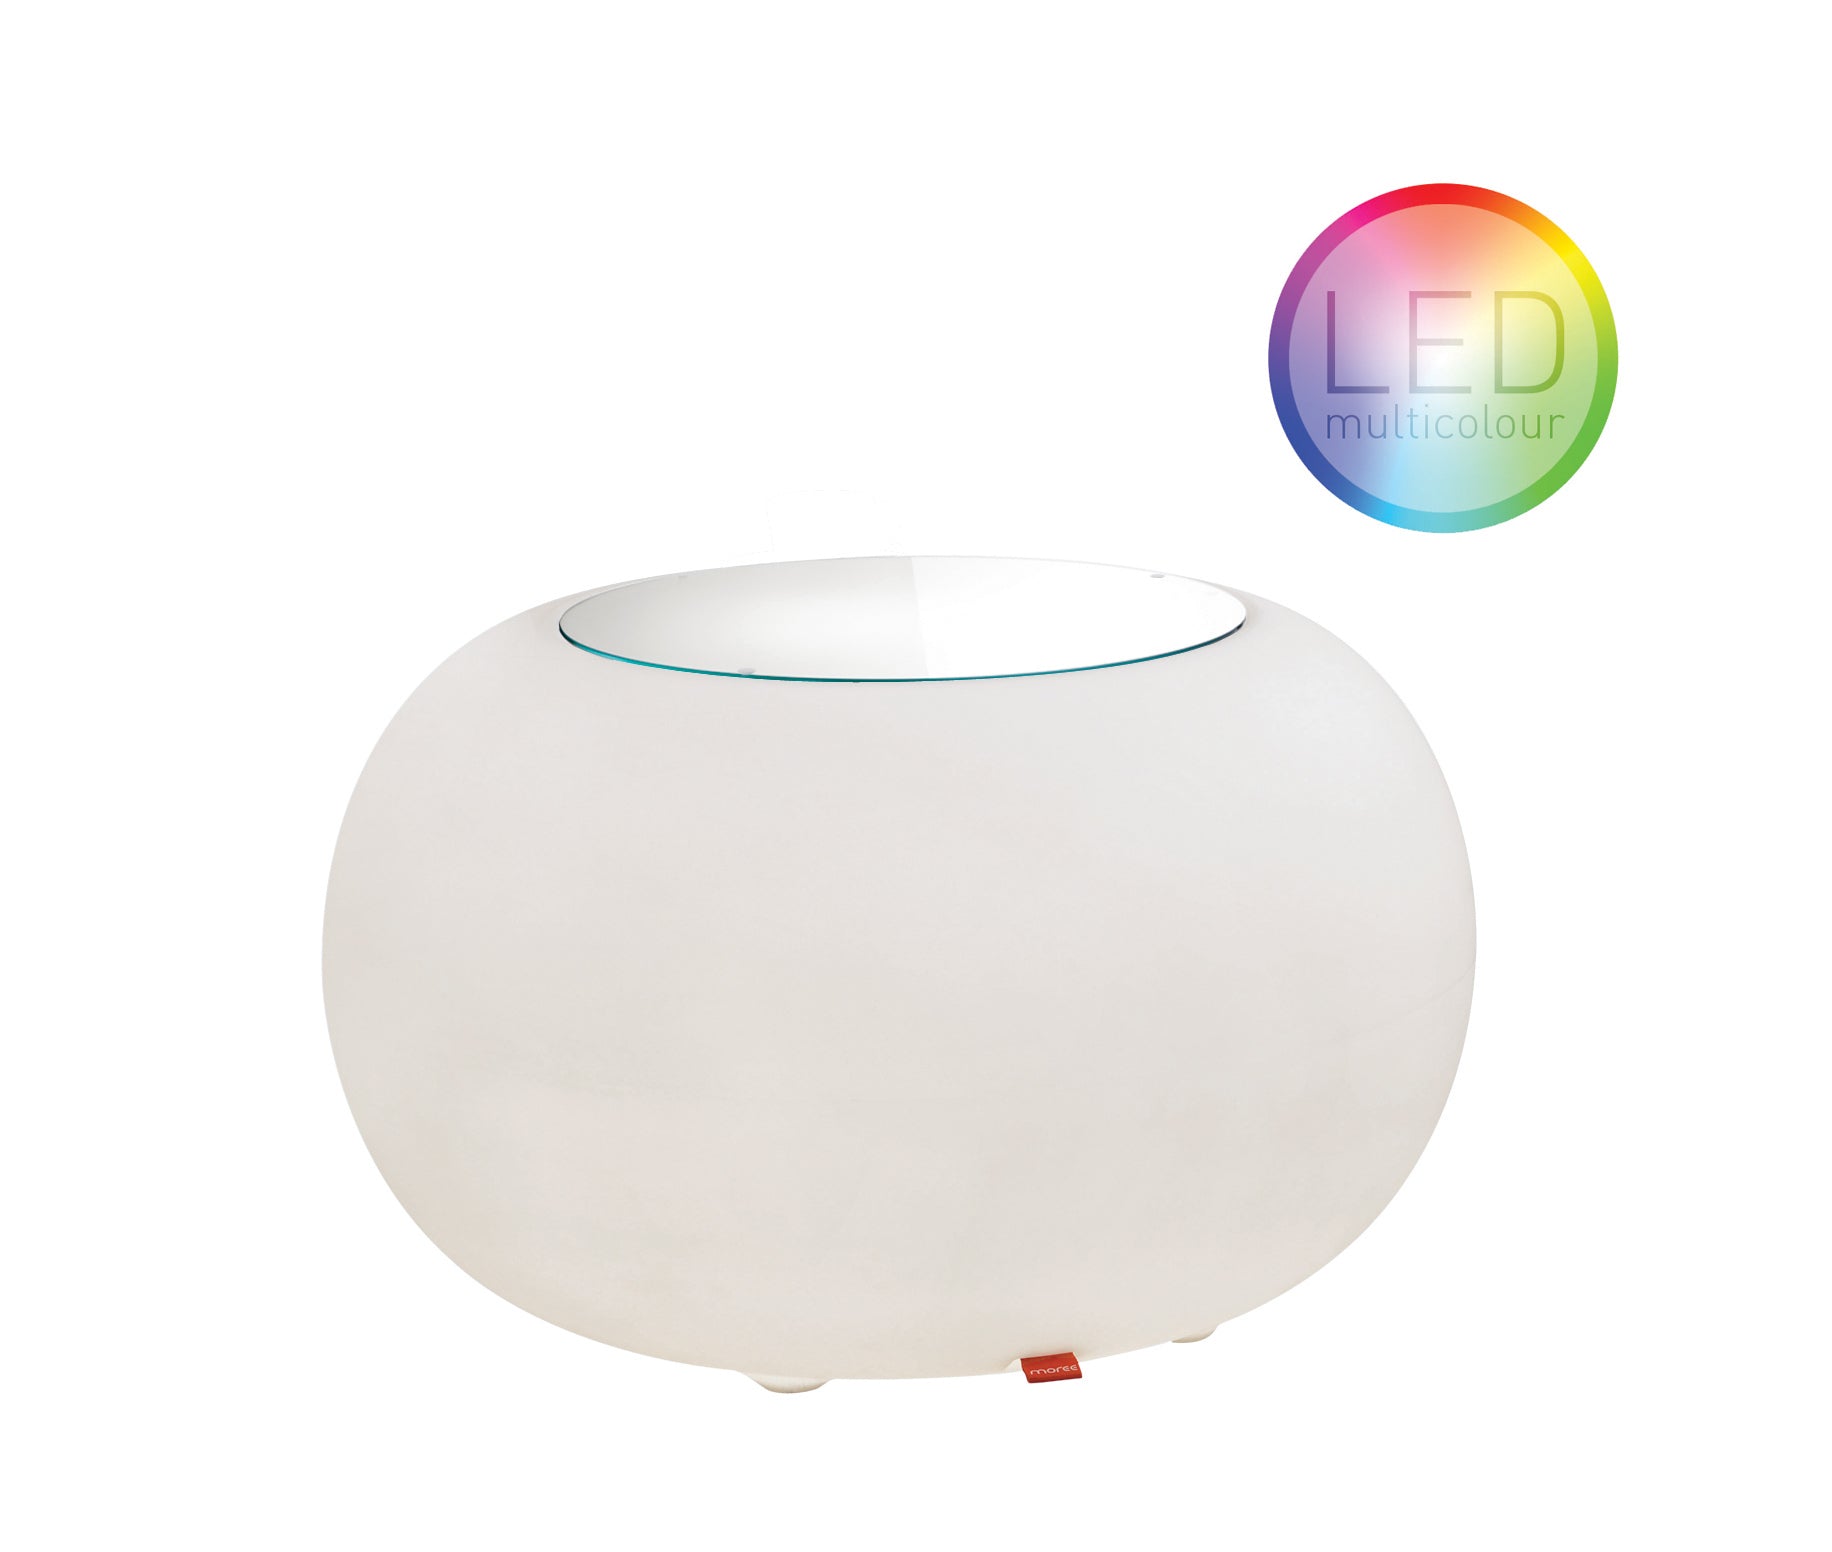 Bubble OUTDOOR LED Accu beleuchteter Tisch von Moree, mit LED-Einheit und Fernbedienung; Gehäuse aus weißem, transluzentem Kunststoff; ballonähnliches Design mit einer runden Auflage aus Glas oder Filz.